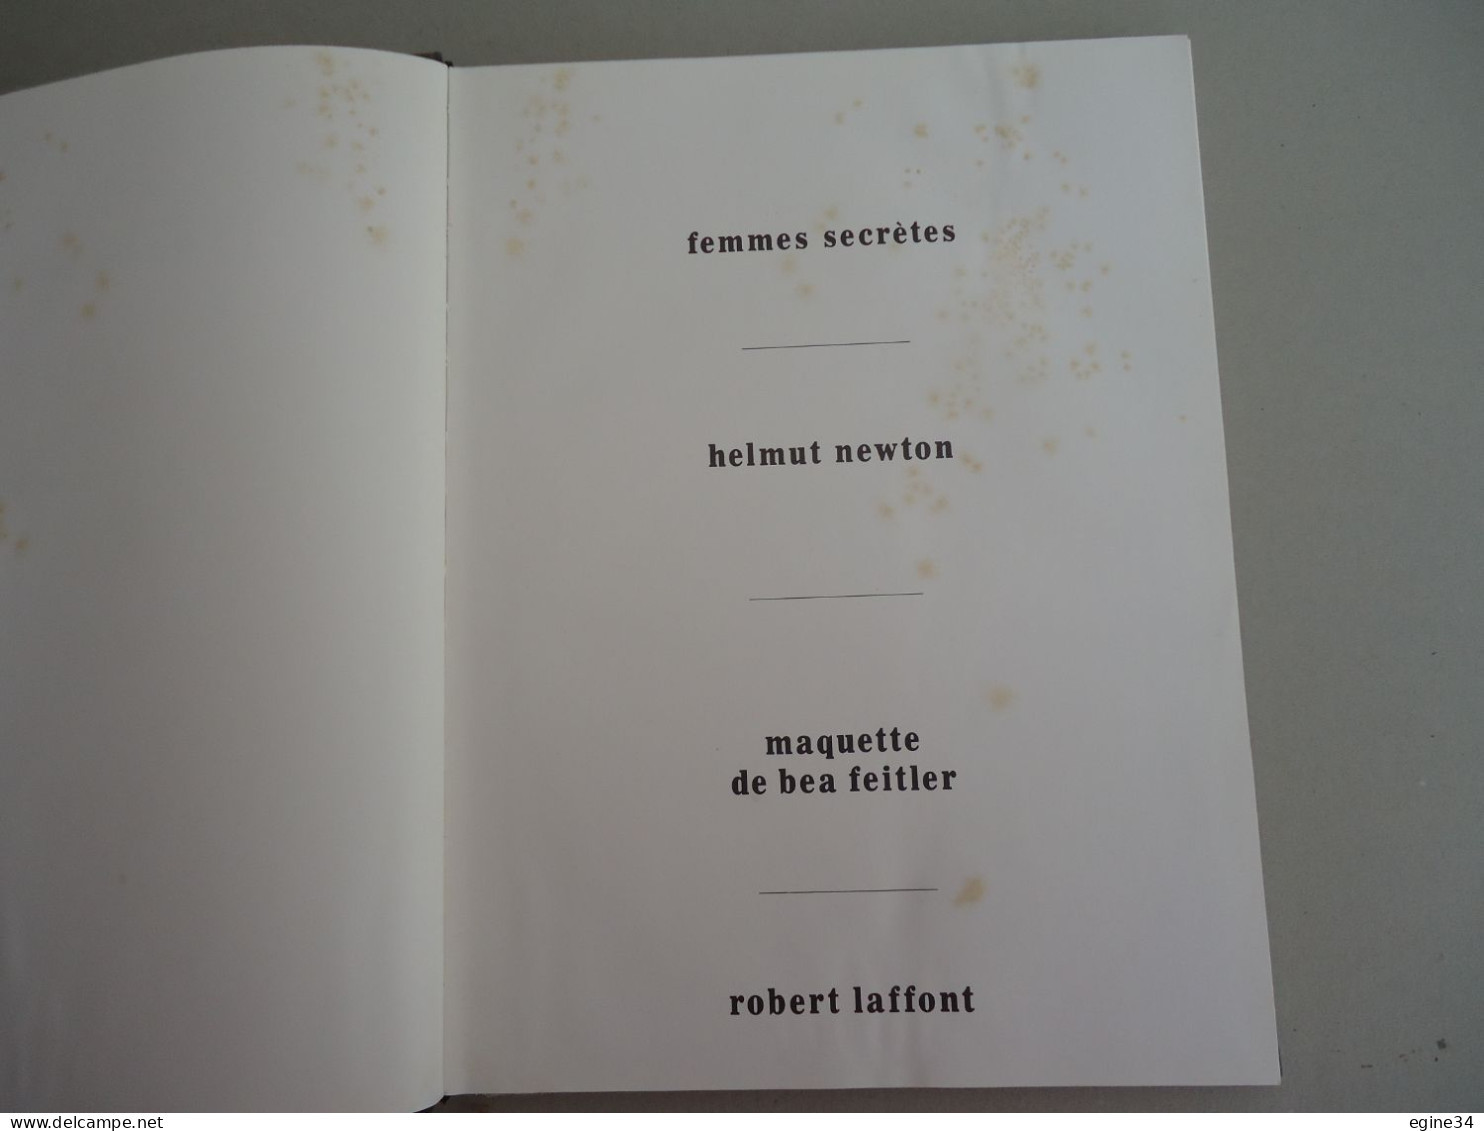 Editions R. Laffont - Helmut Newton - Femmes Secrètes - 1976 - Texte Philippe Garner - Photographie